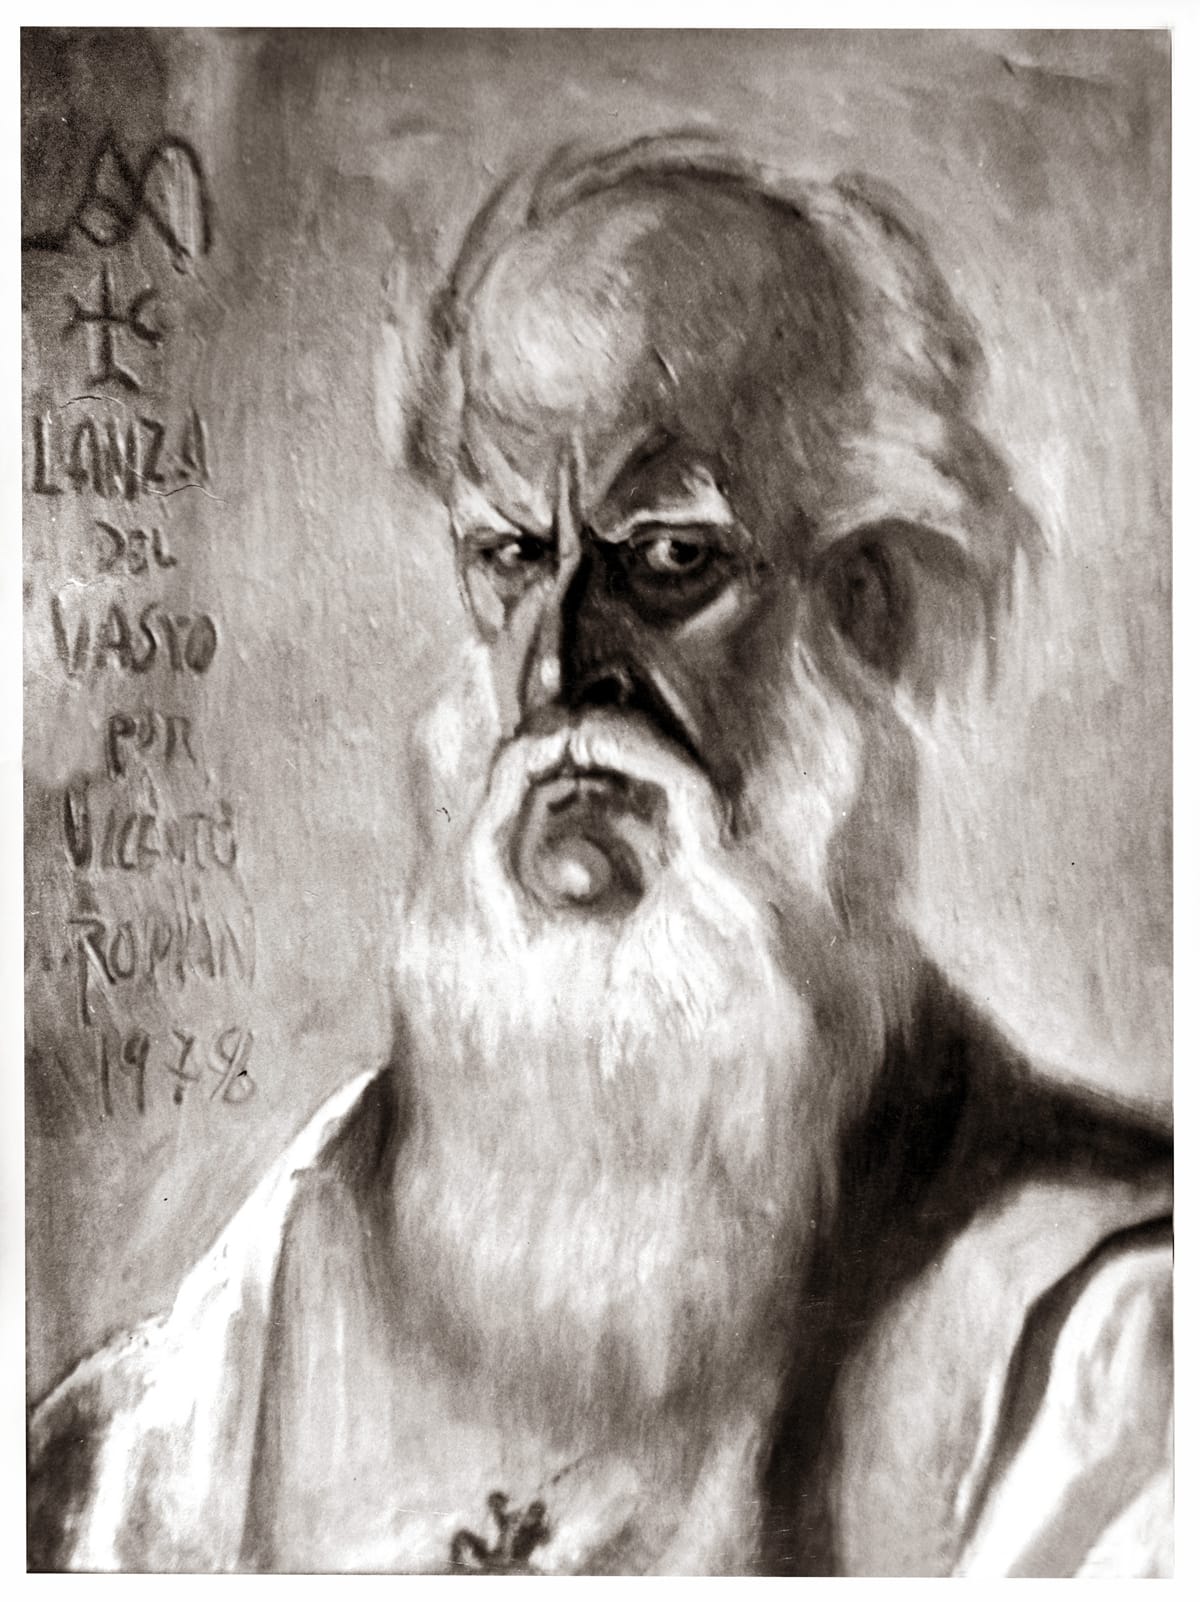 Portrait de Lanza del Vasto